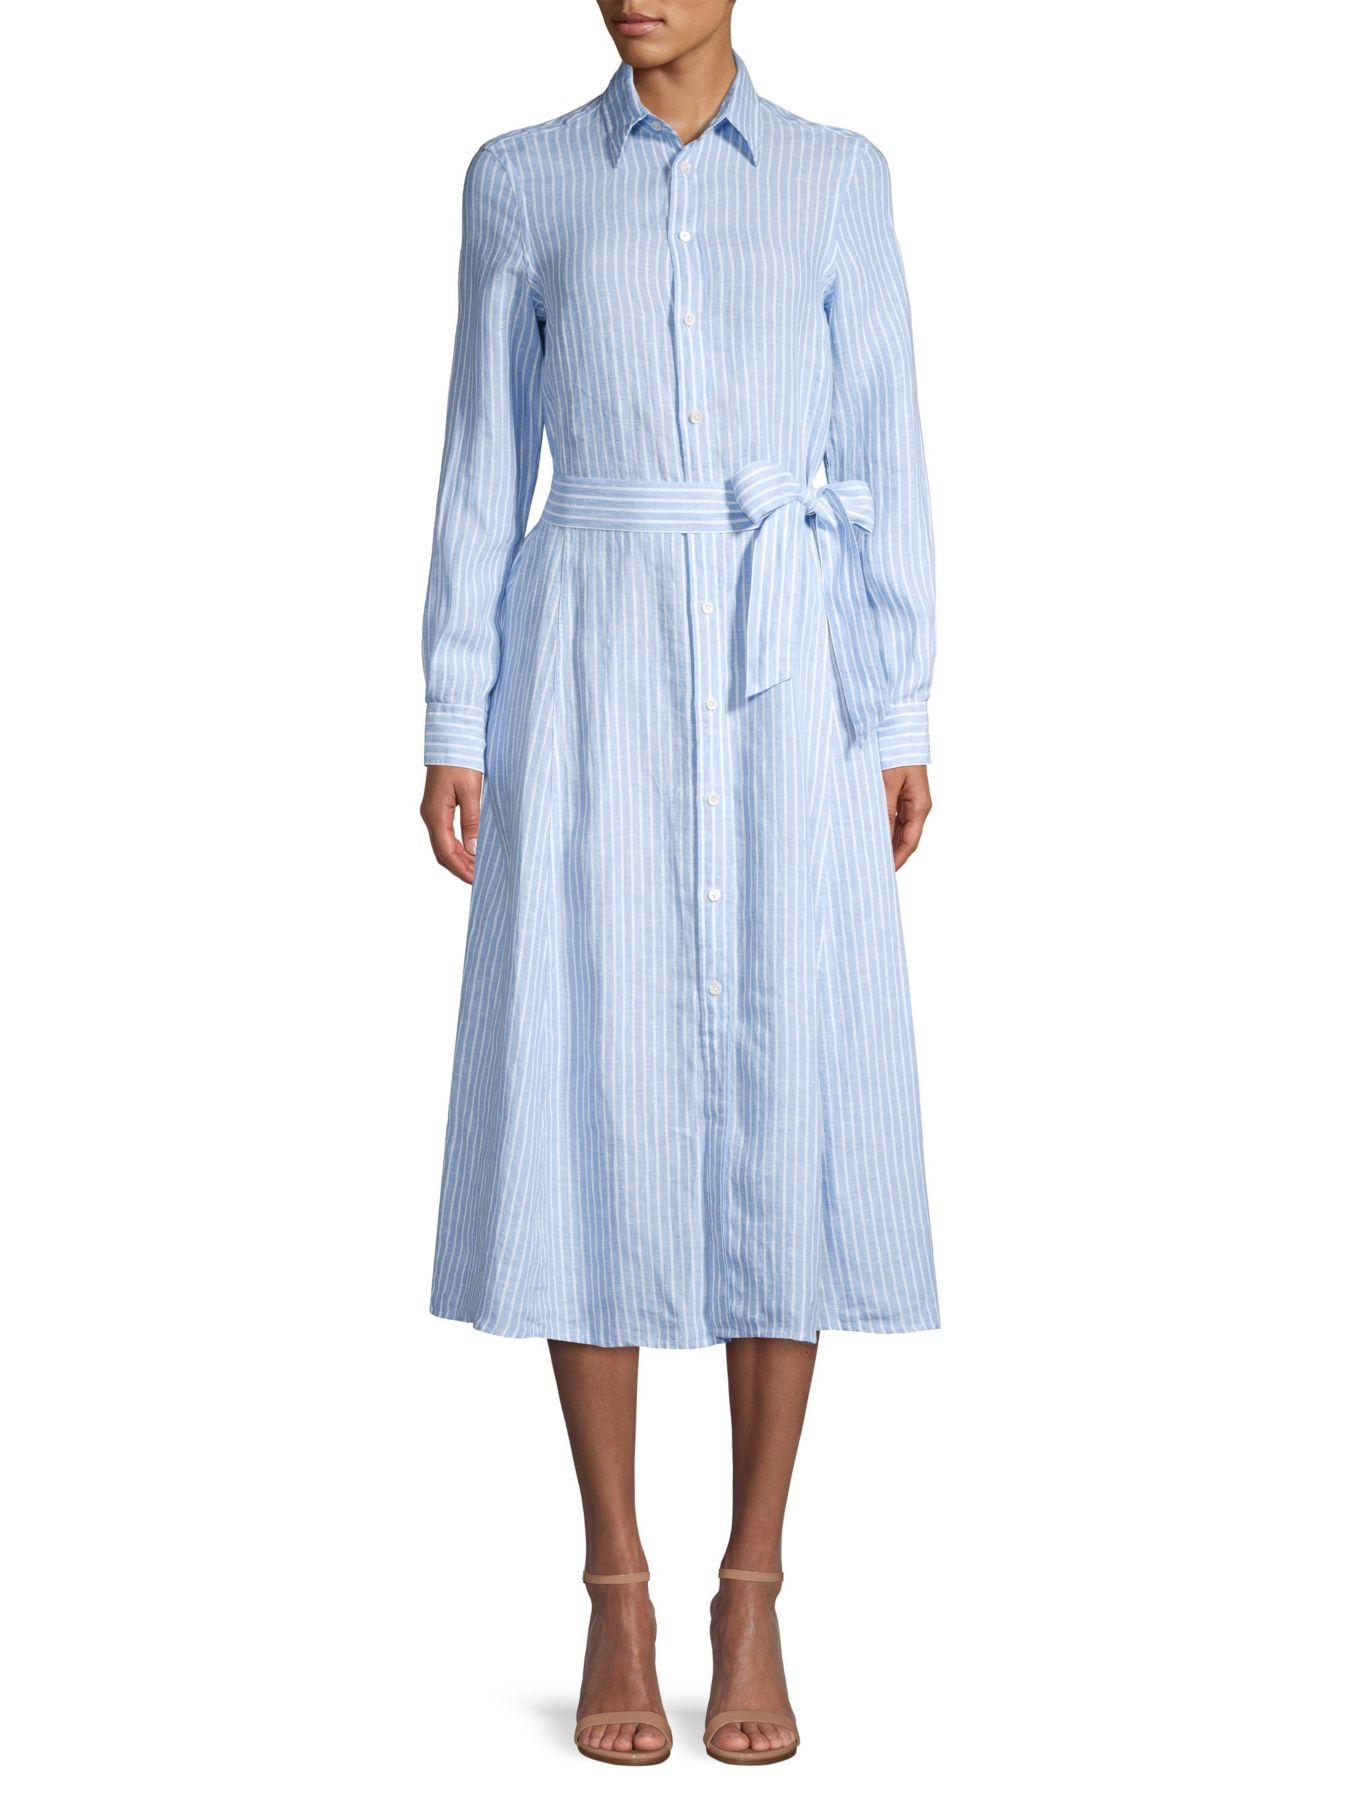 Polo Ralph Lauren Ashton Striped Linen Shirt Dress in Blue White (Blue) |  Lyst